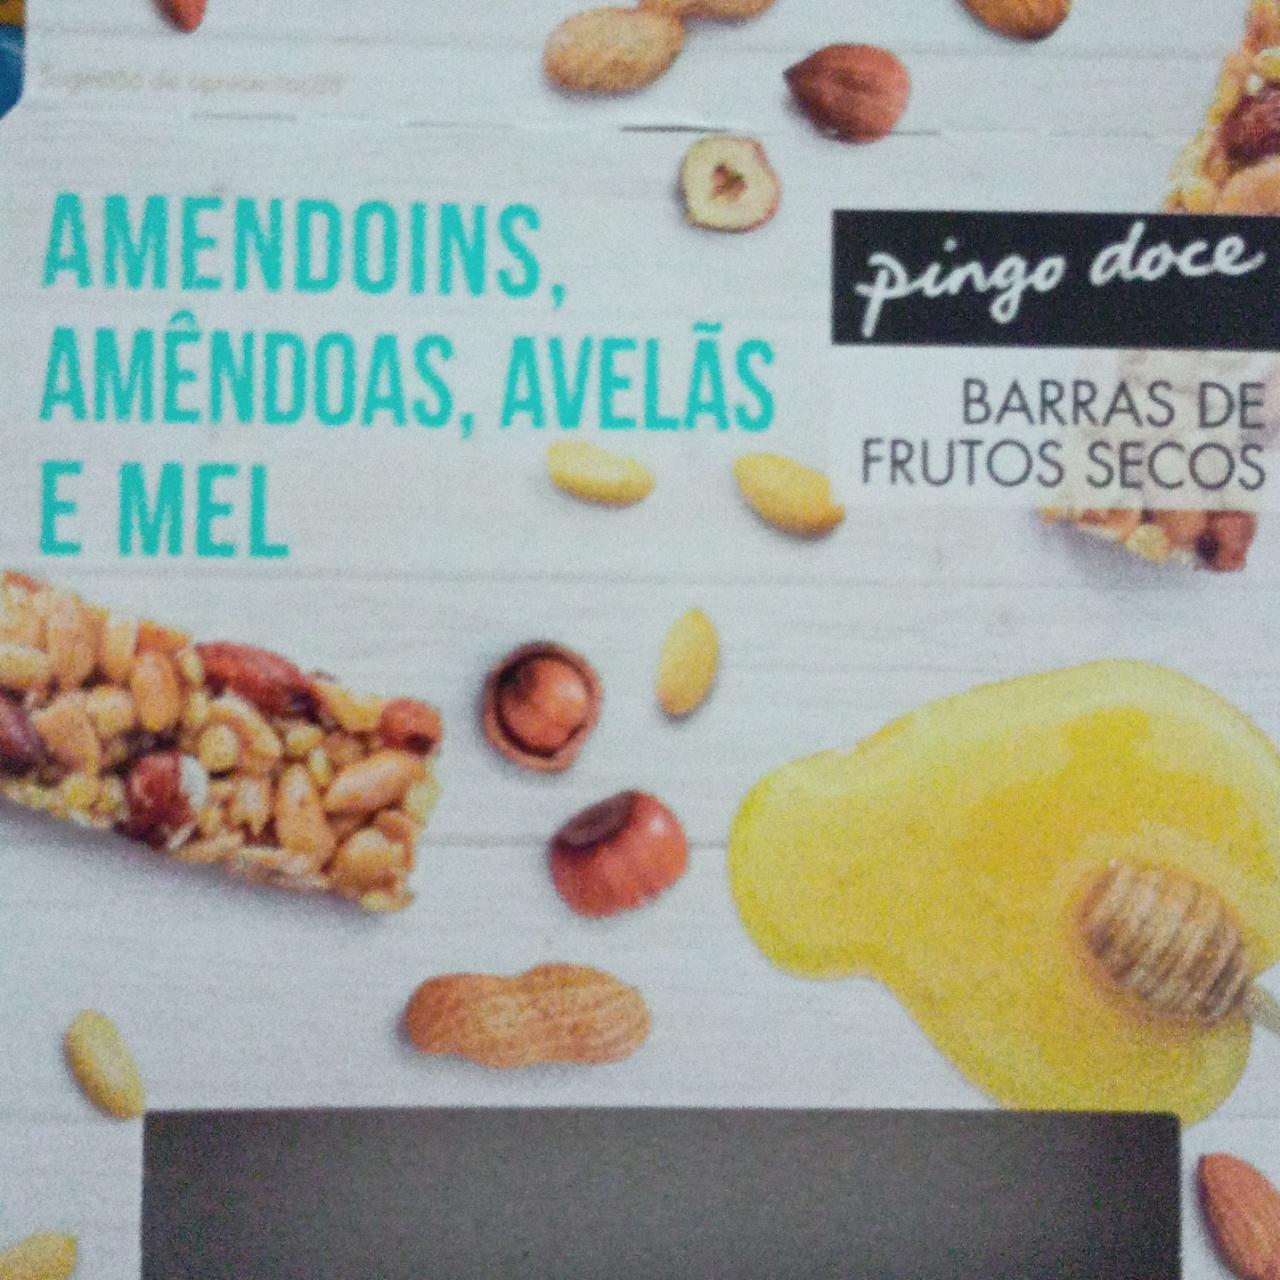 Fotografie - Amendoins Barras de frutos secos Pingo doce